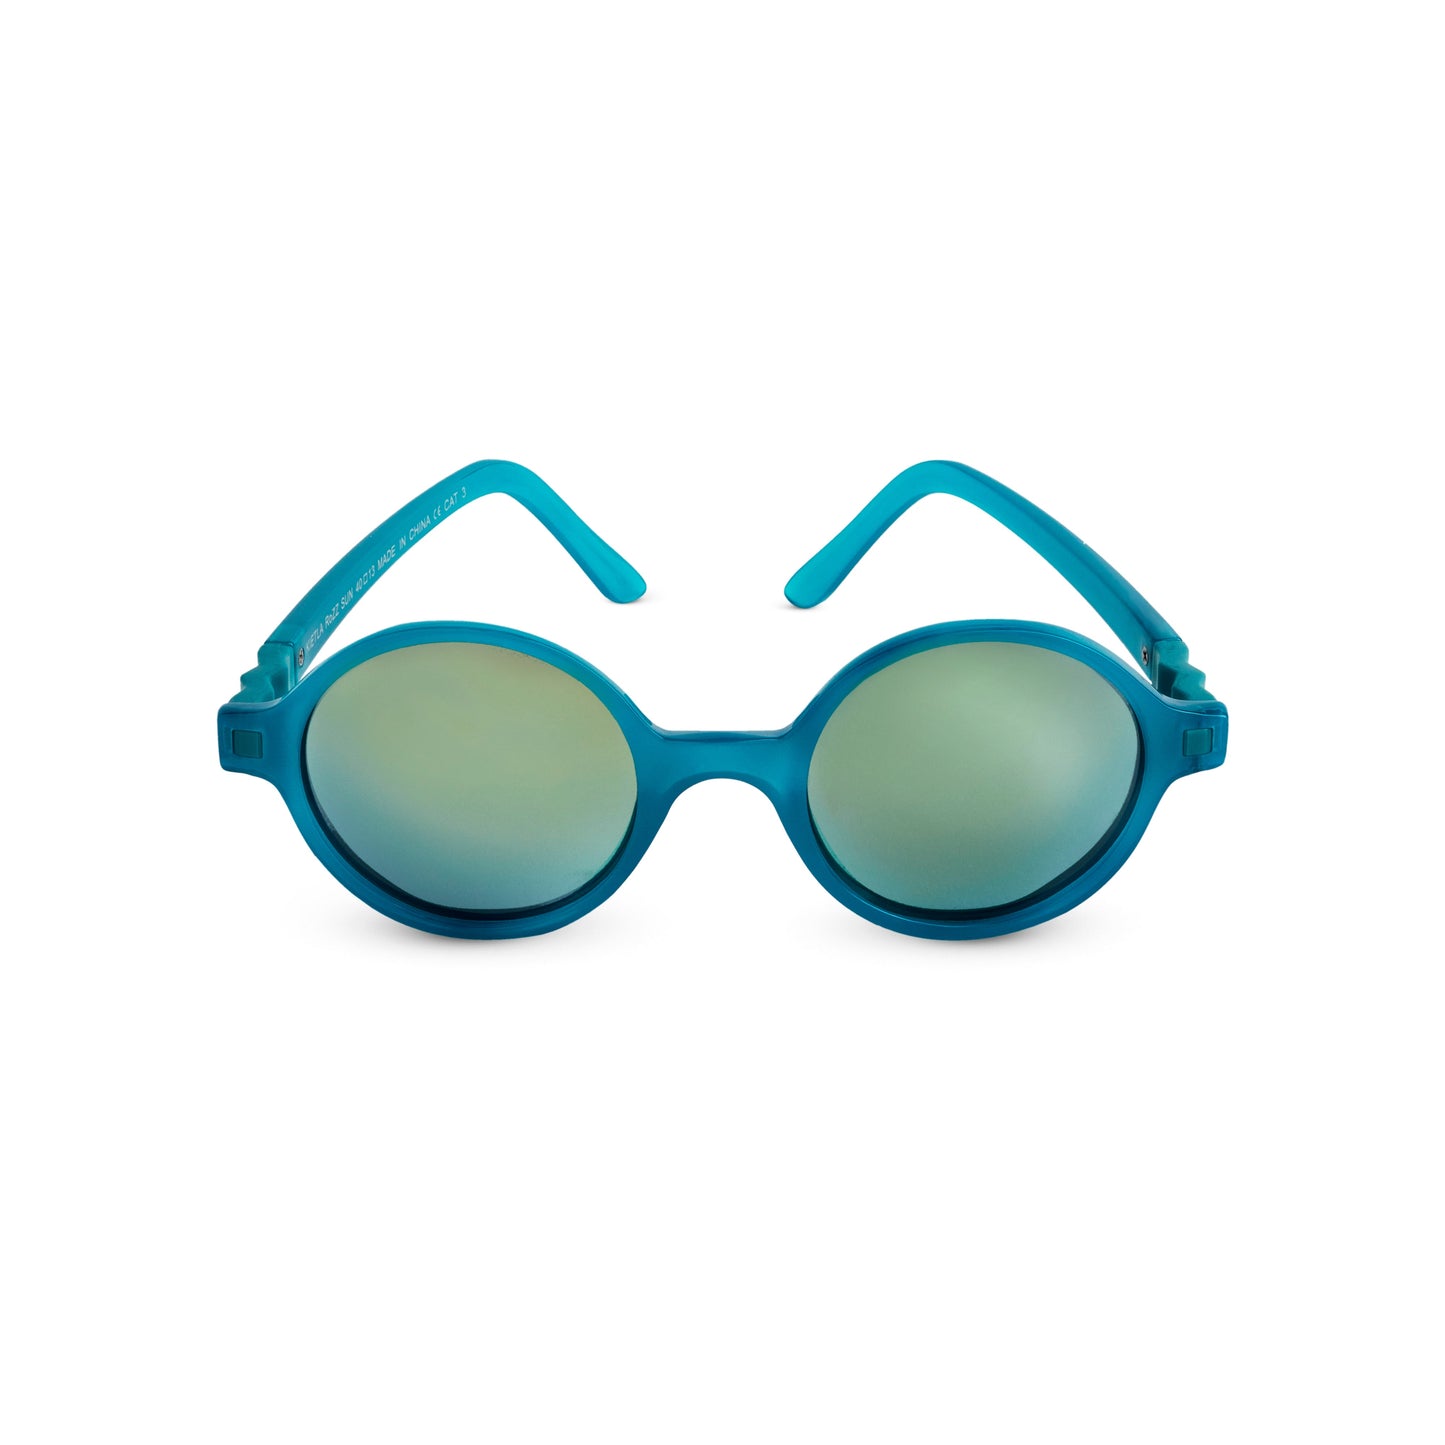 Okulary przeciwsłoneczne RoZZ 4-6 Reflex Blue Ki ET LA